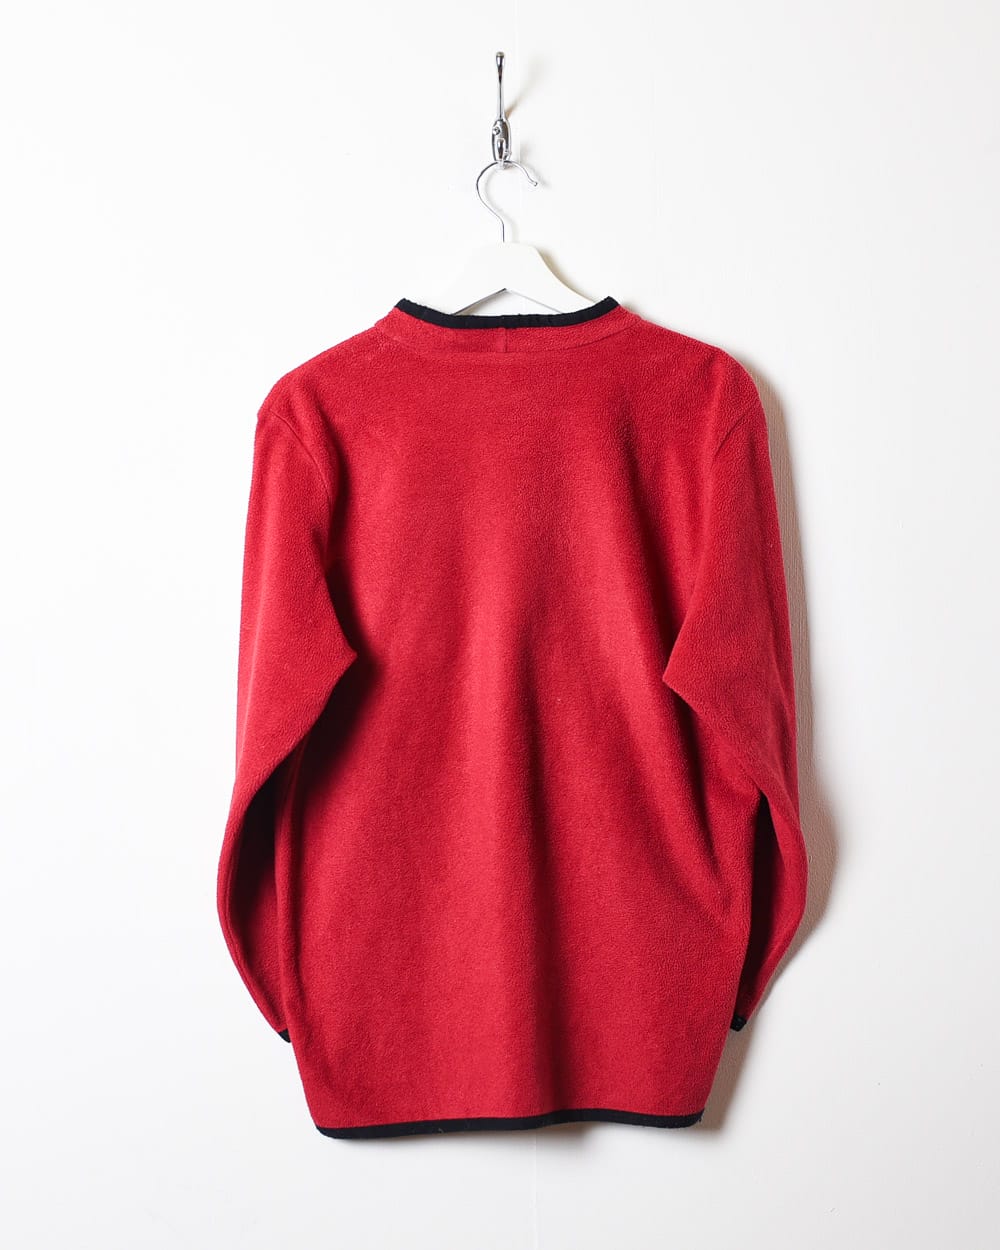 Red Nike High Neck Fleece Sweatshirt - X-Small